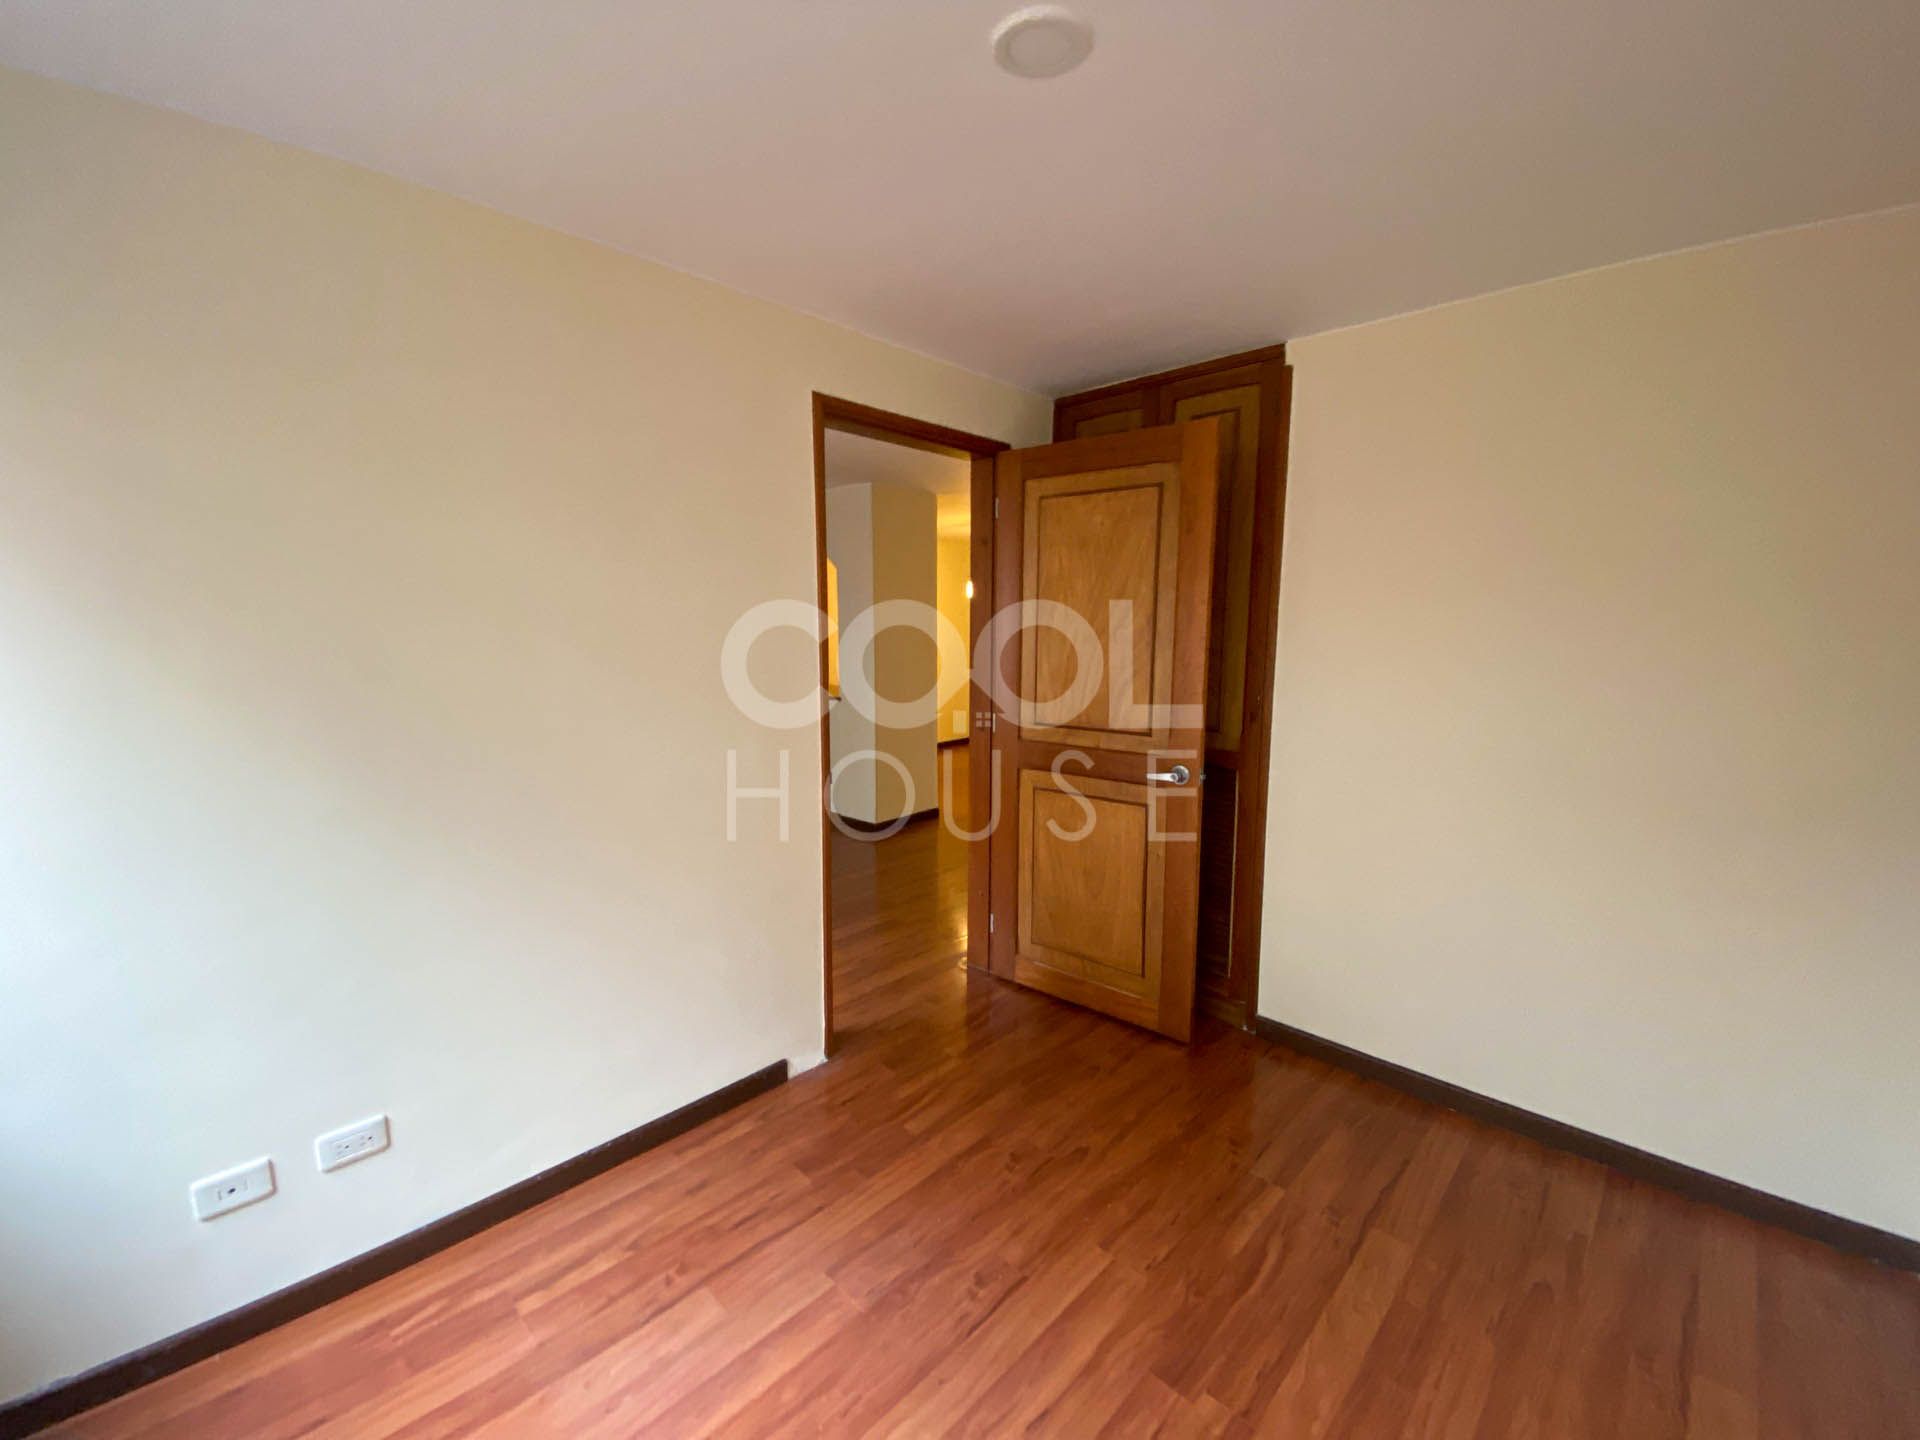 Apartamento en arriendo Molinos Norte 119 m² - $ 4.560.000,00